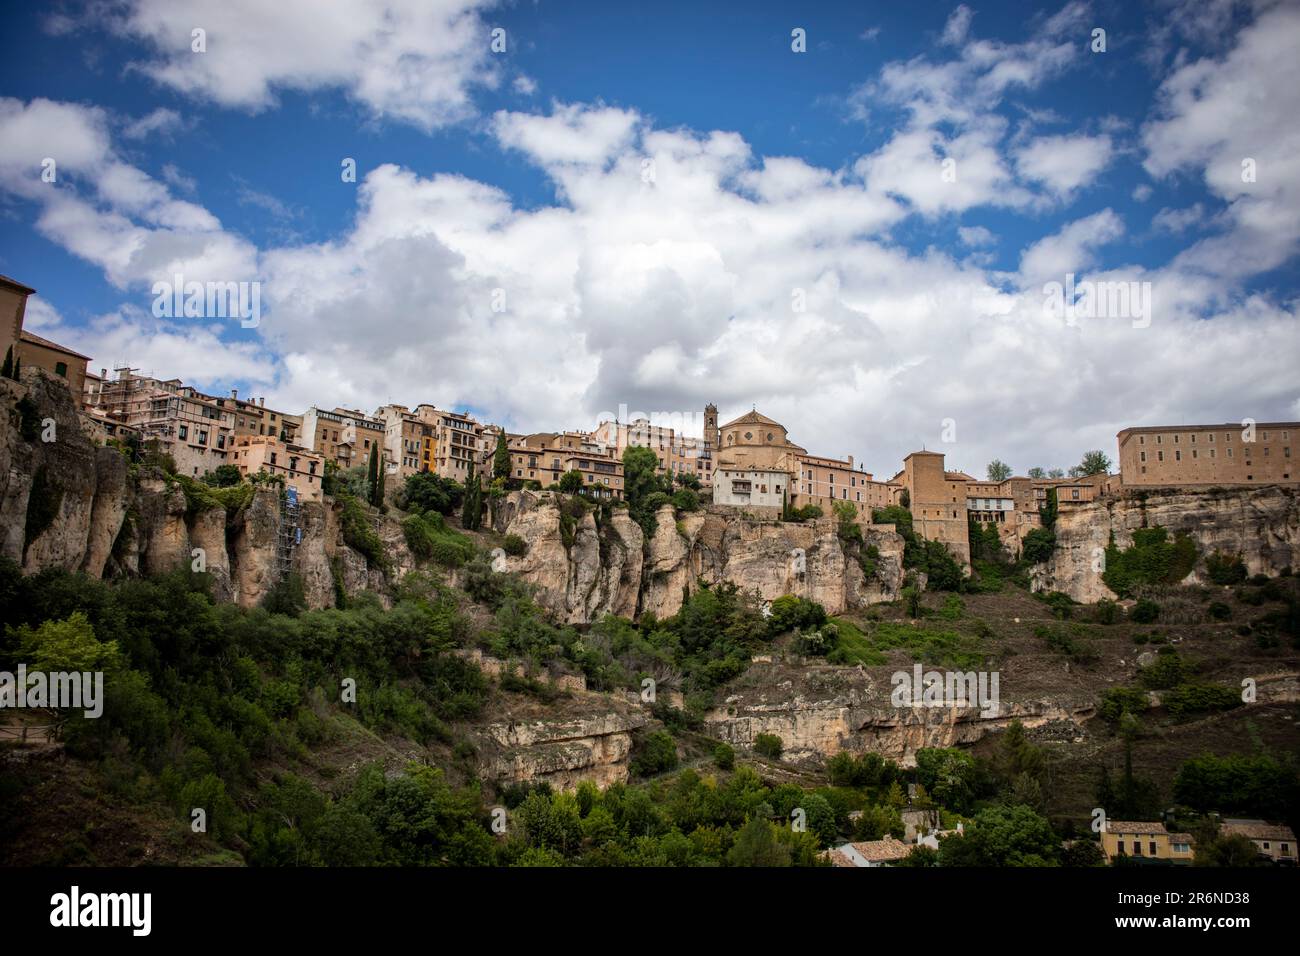 Vue panoramique de la vieille ville de Cuenca, ville classée au patrimoine mondial de l'unesco, sur le rocher et depuis le parador national Banque D'Images